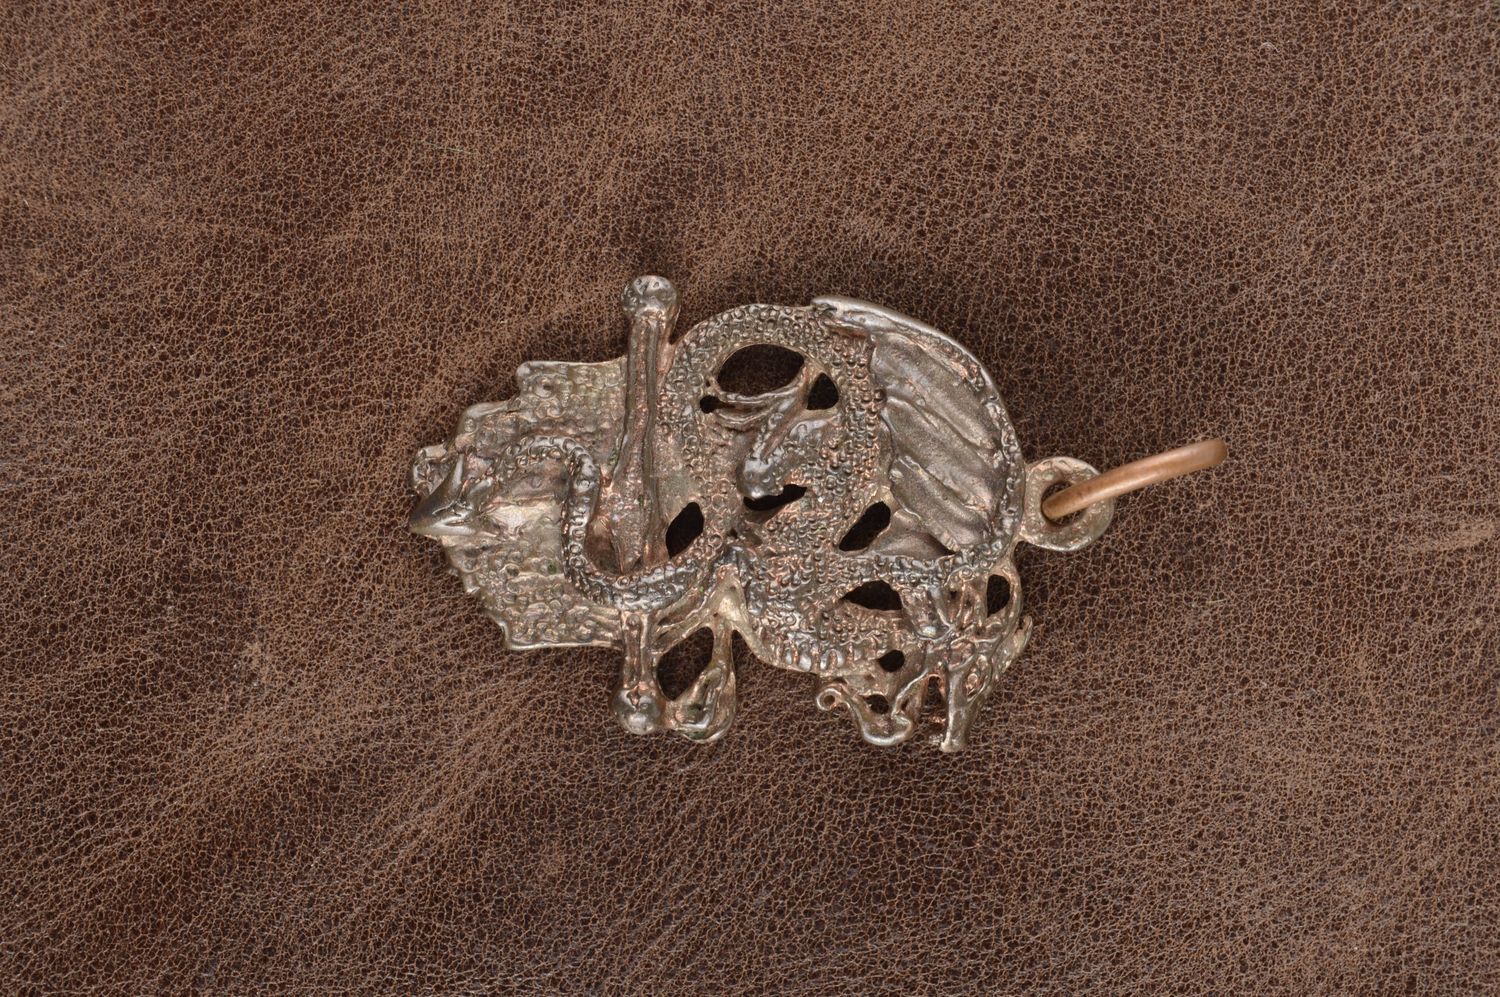 Авторское украшение кулон ручной работы дракон металлическая подвеска бронзовая  фото 1